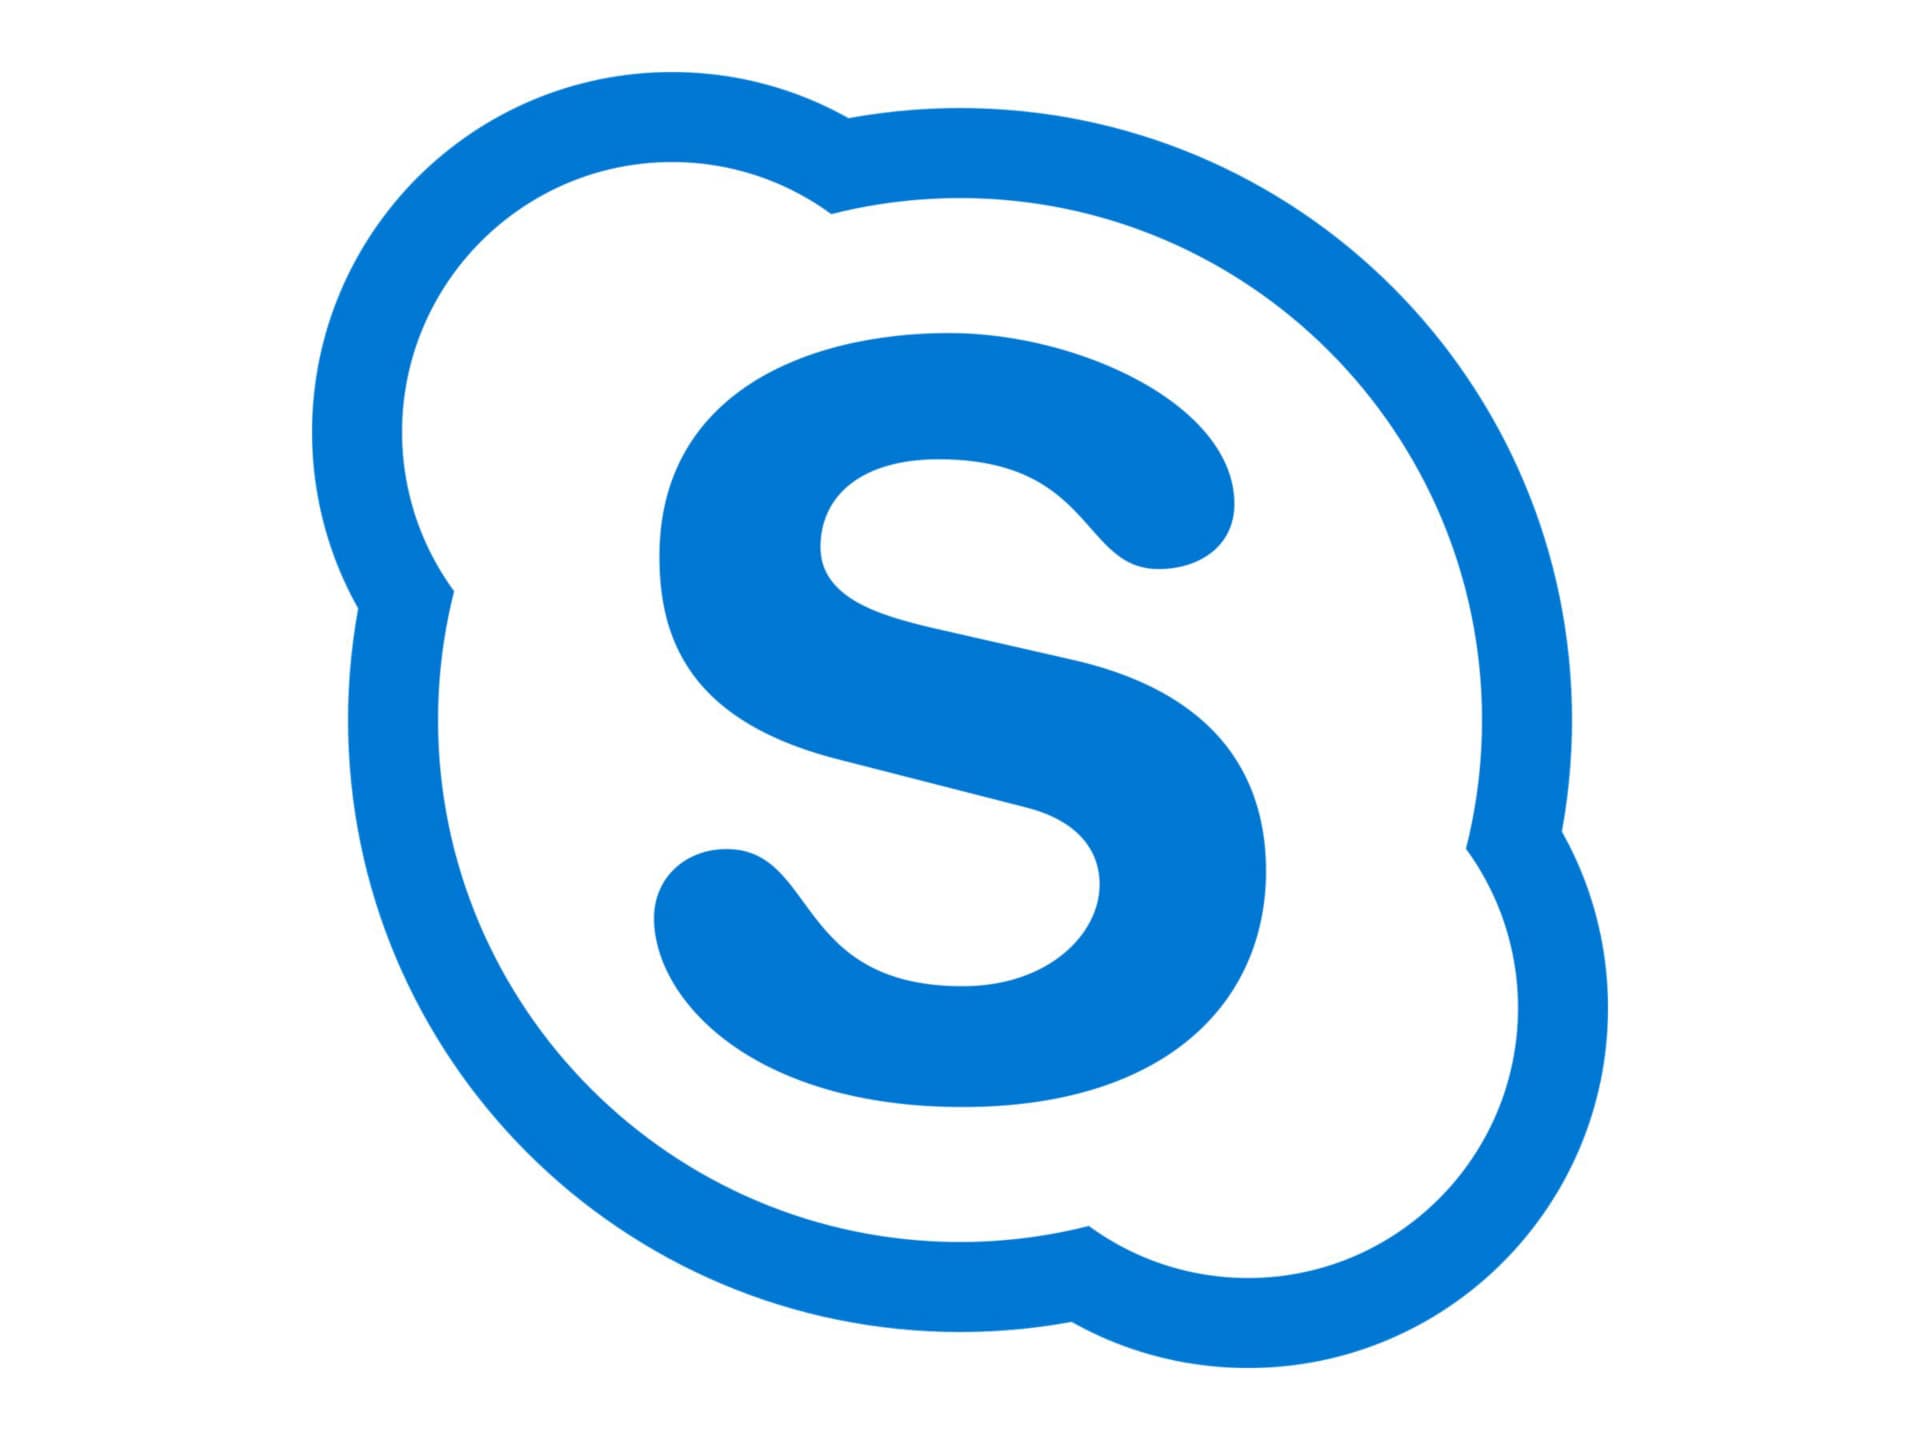 Skype for Business Server Standard CAL 2019 - license - 1 user CAL